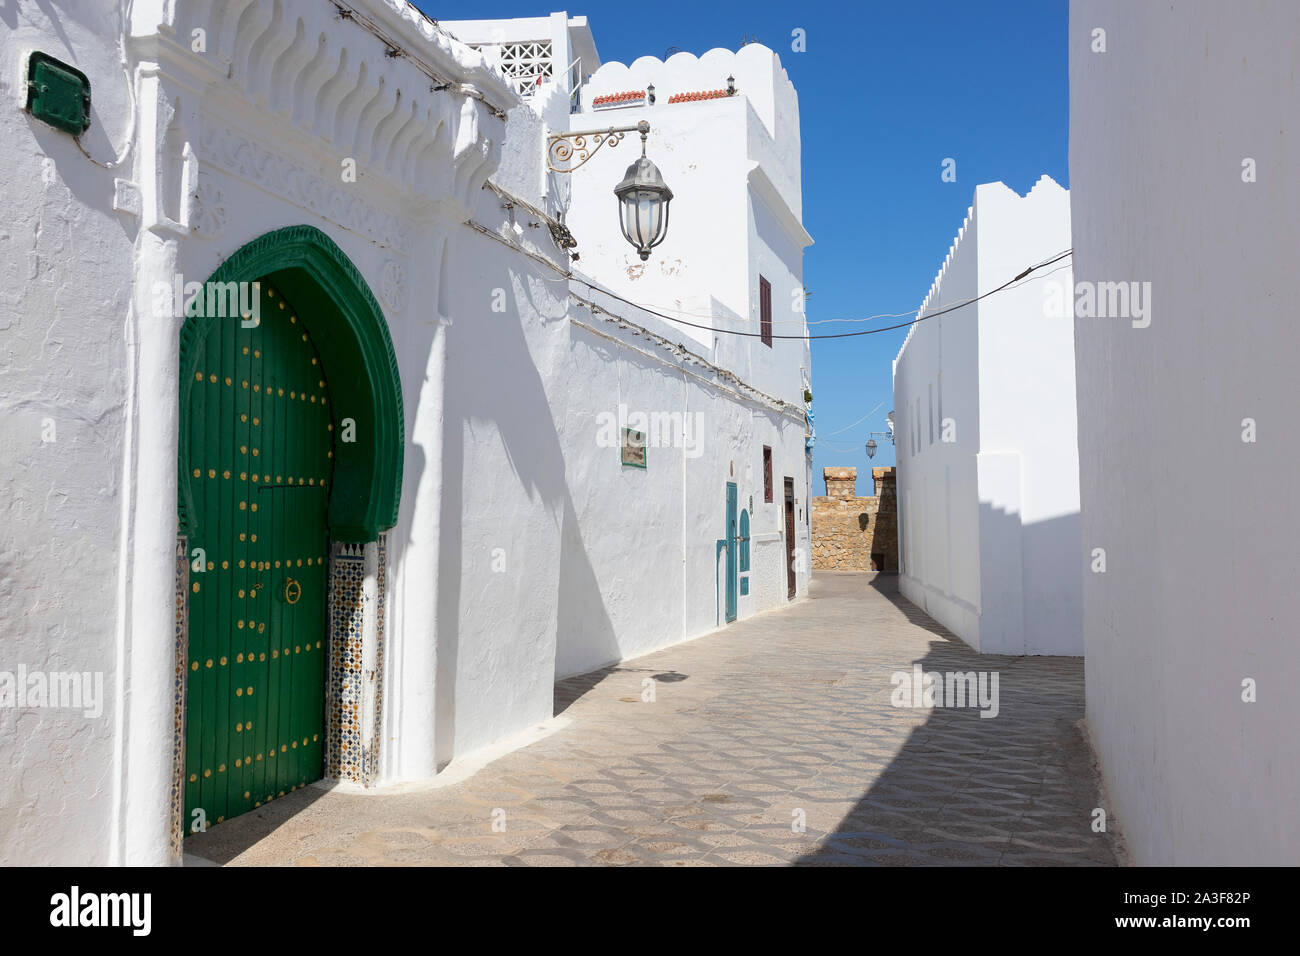 Classic Old street dans la médina d'Asilah avec le mur de rempart à la fin de la rue, le nord du Maroc Banque D'Images